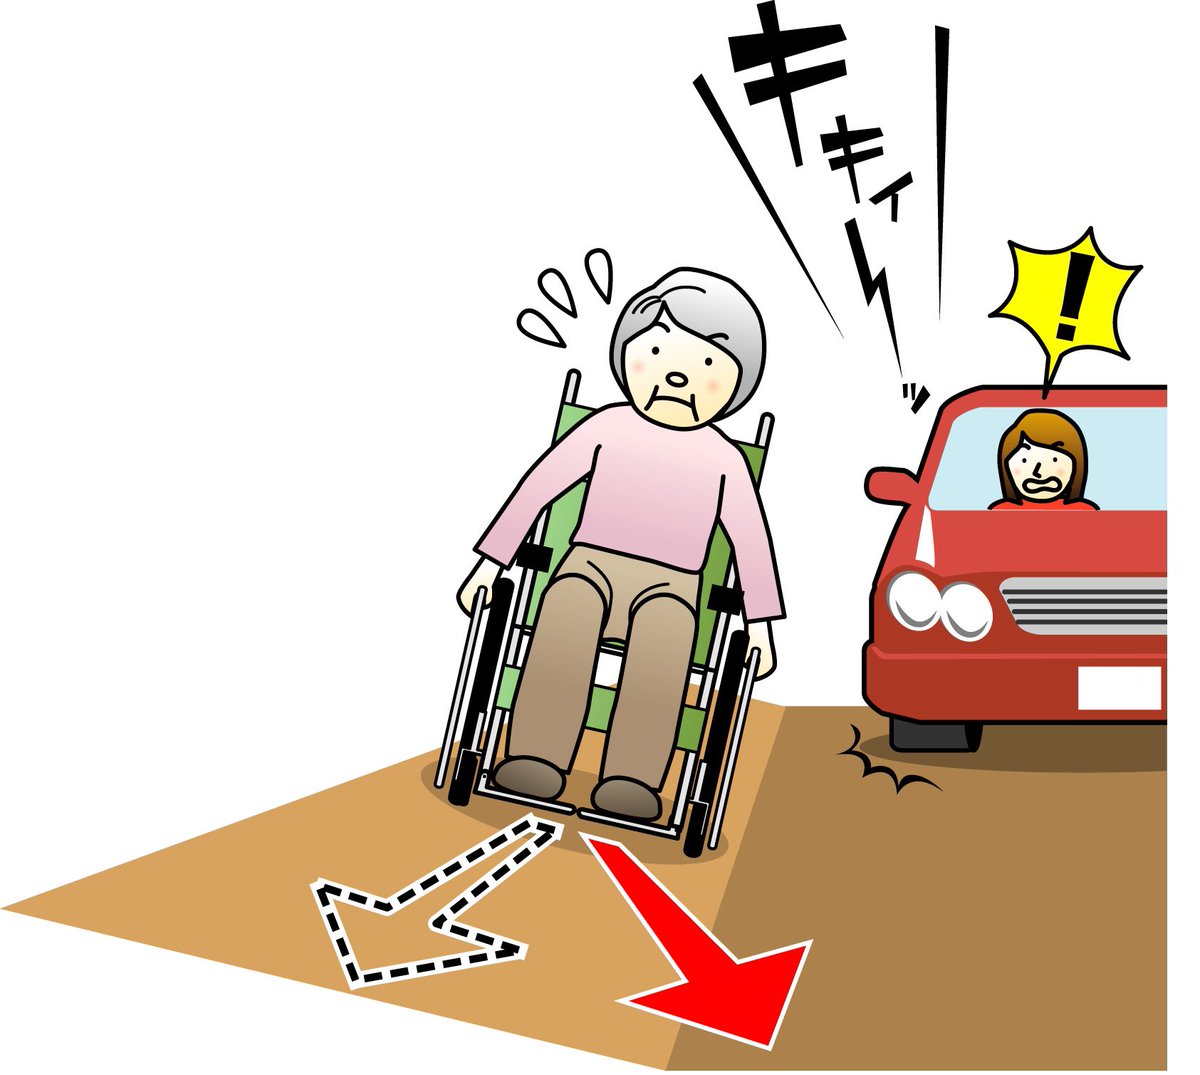 車椅子は踏切の窪みや側溝に前輪がはまりやすいのです。また普段は感じられない道の勾配に操作が困難になる事も(1.2枚目)もし段差やはまった車椅子を持ち上げる介助する事があったら3.4枚目を参考にしてみて下さい。
前輪落ちただけなら水色モブさんの介助で。
#拡散希望︎ 